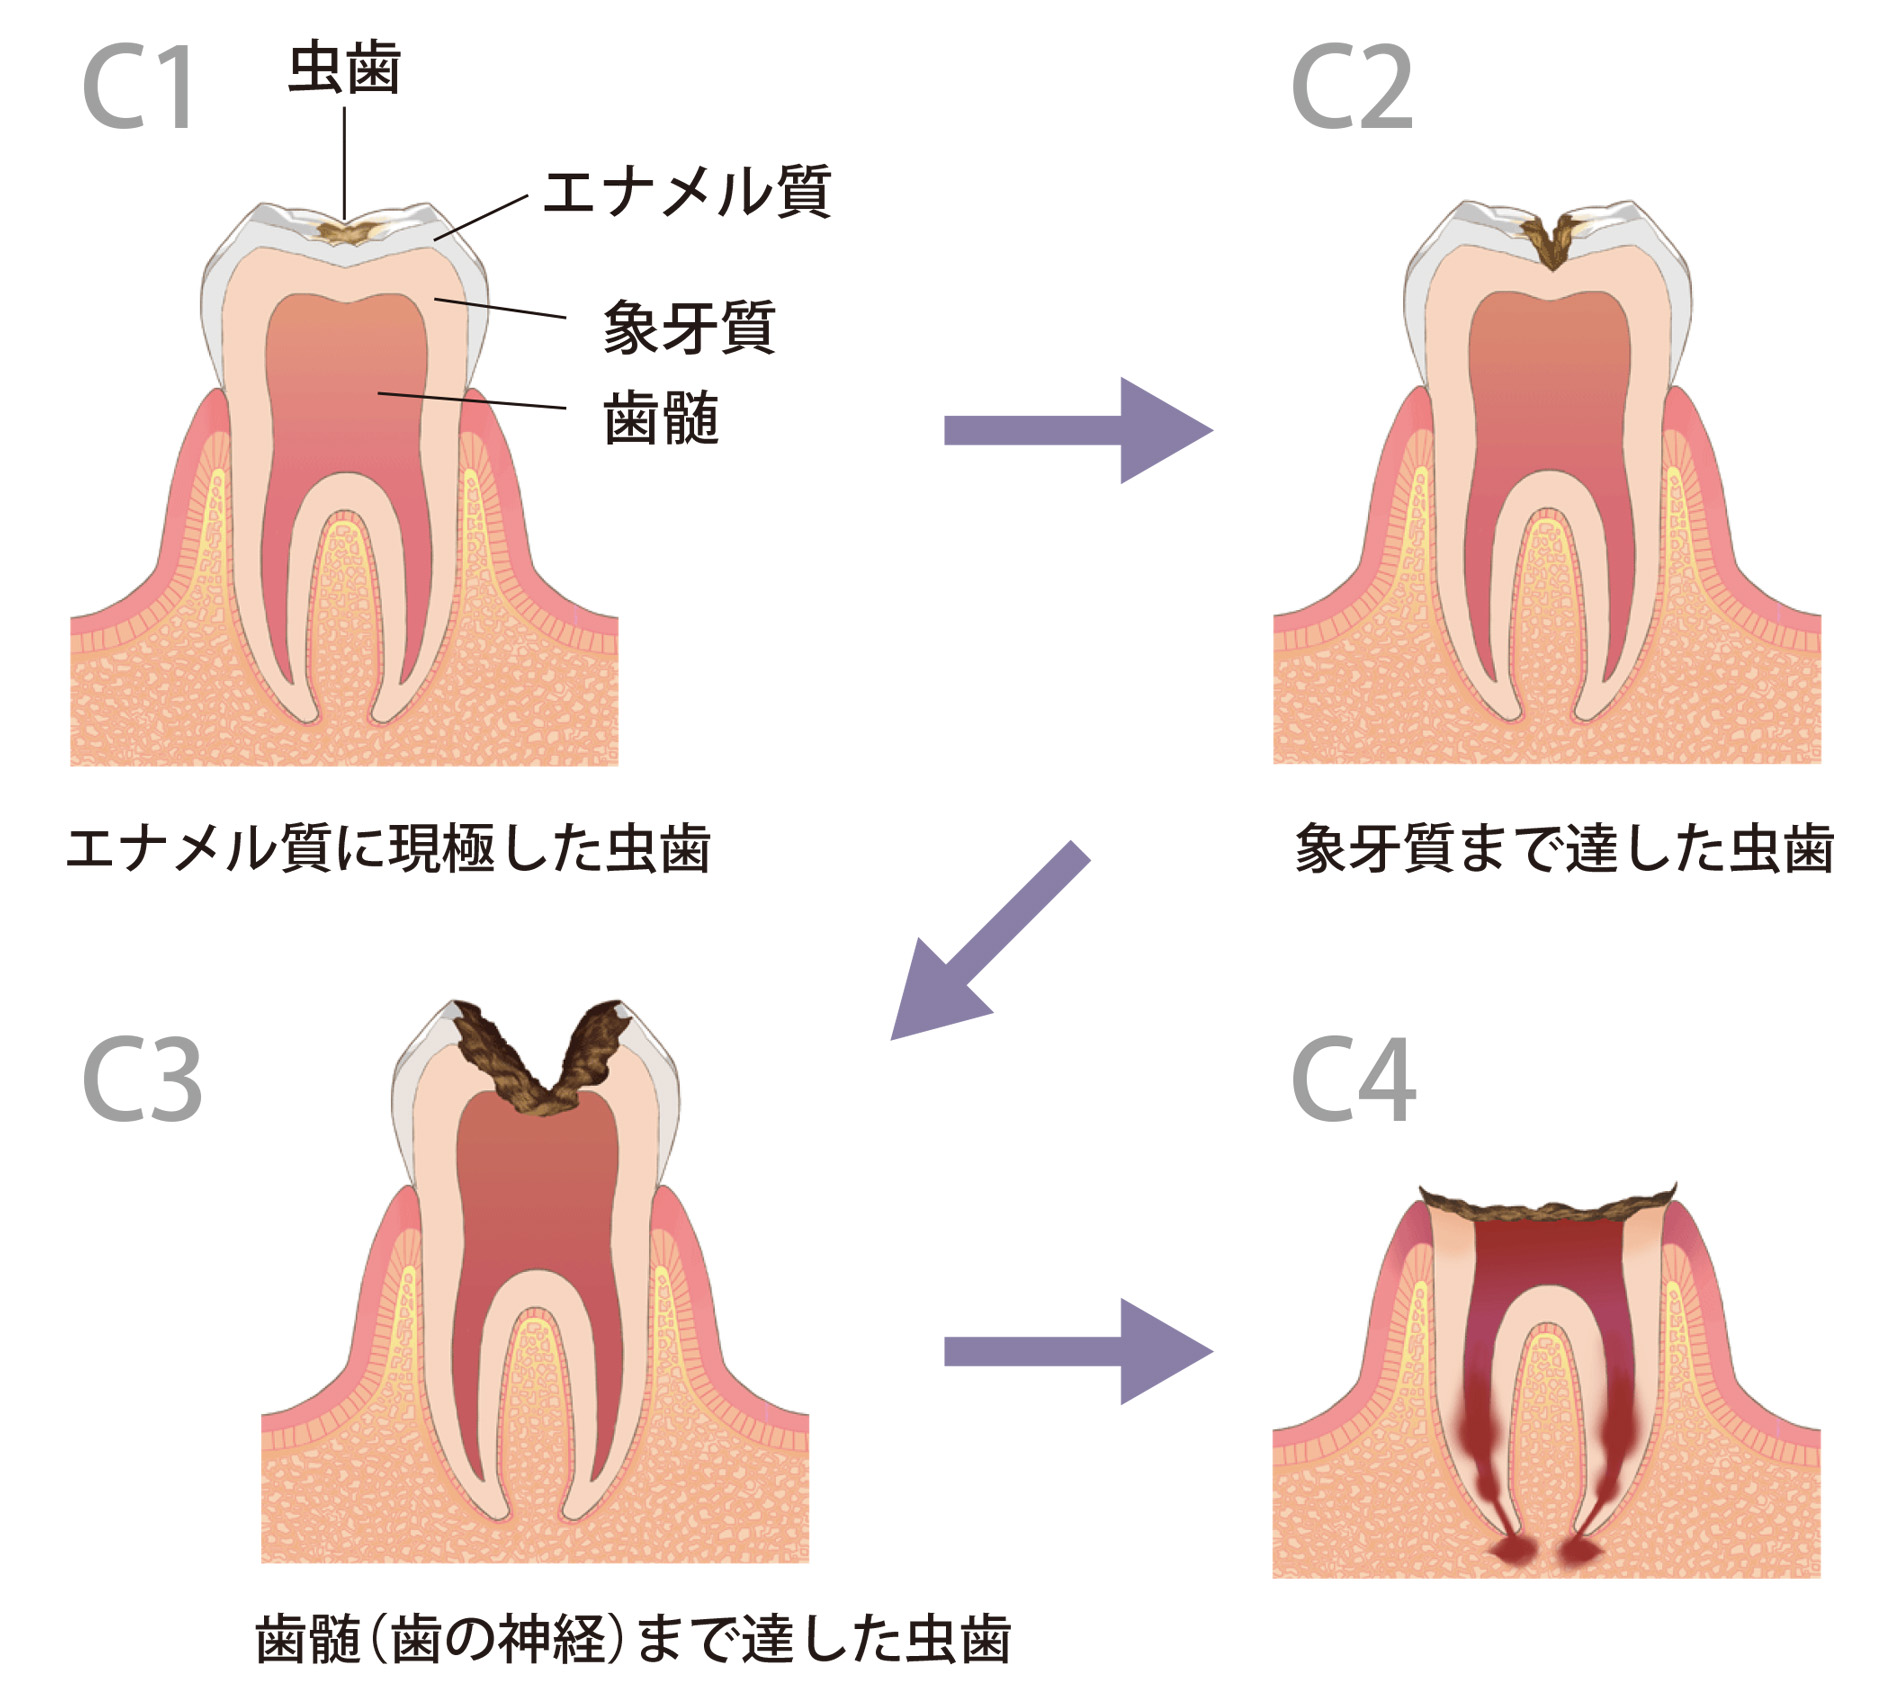 C1～C4までの分類図。C1:エナメル質に現極した虫歯。C2:象牙質まで達した虫歯。C3:歯髄（歯の神経）まで達した虫歯。